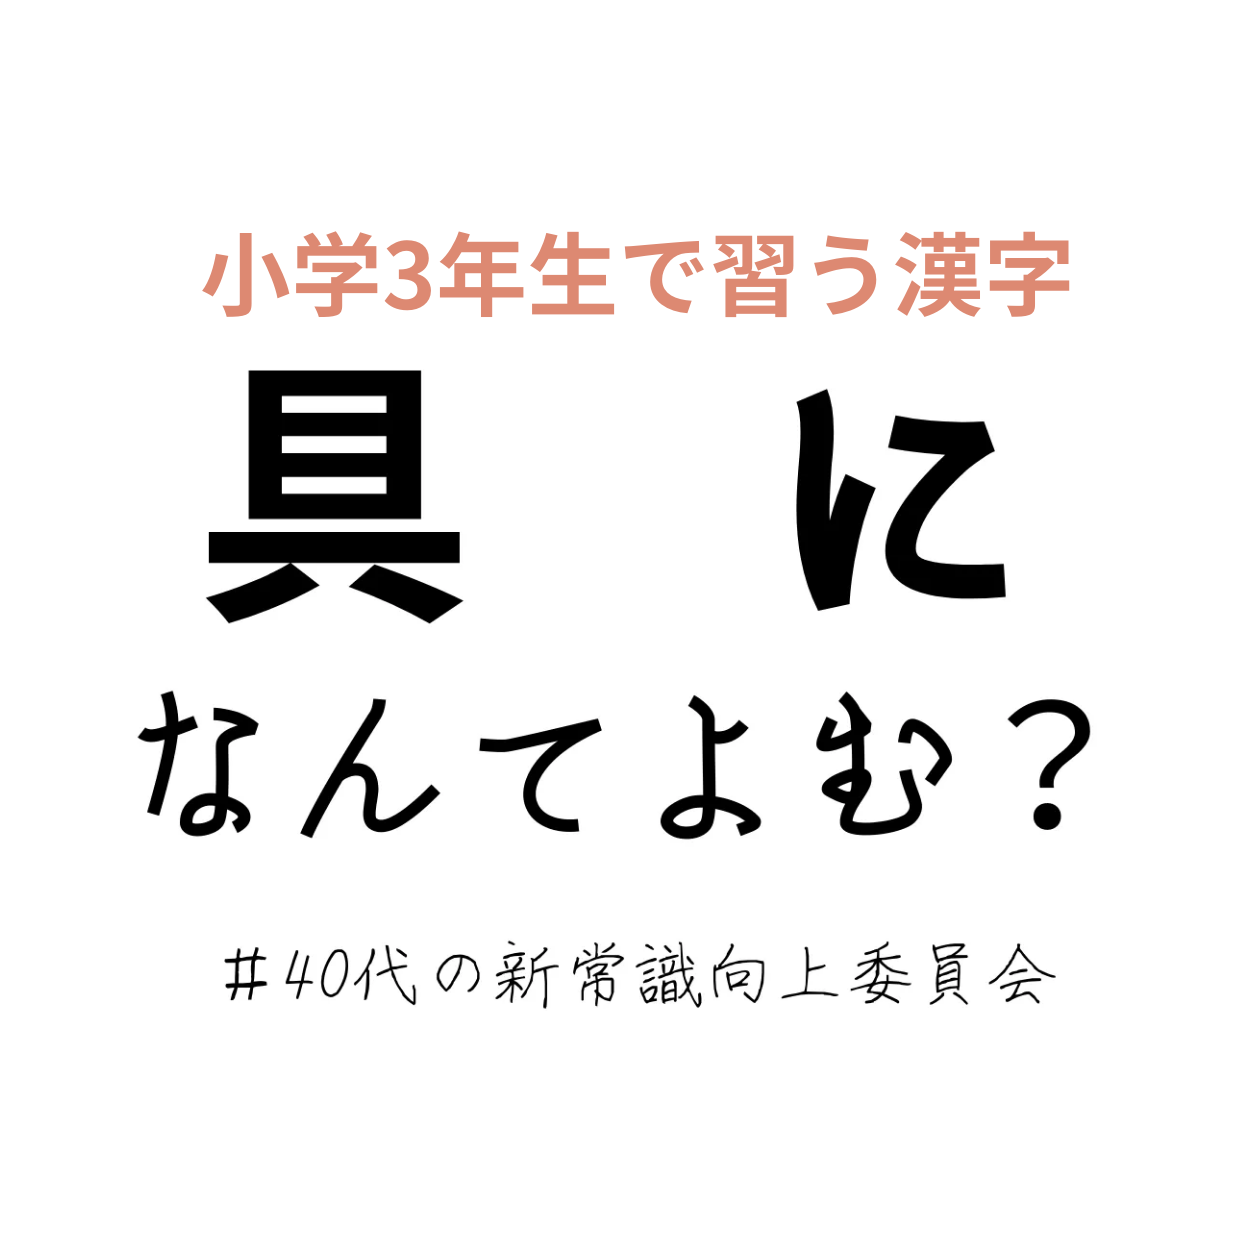 正しく読めてる 小3で習うはず 具に この漢字読めますか 40代の新常識向上委員会